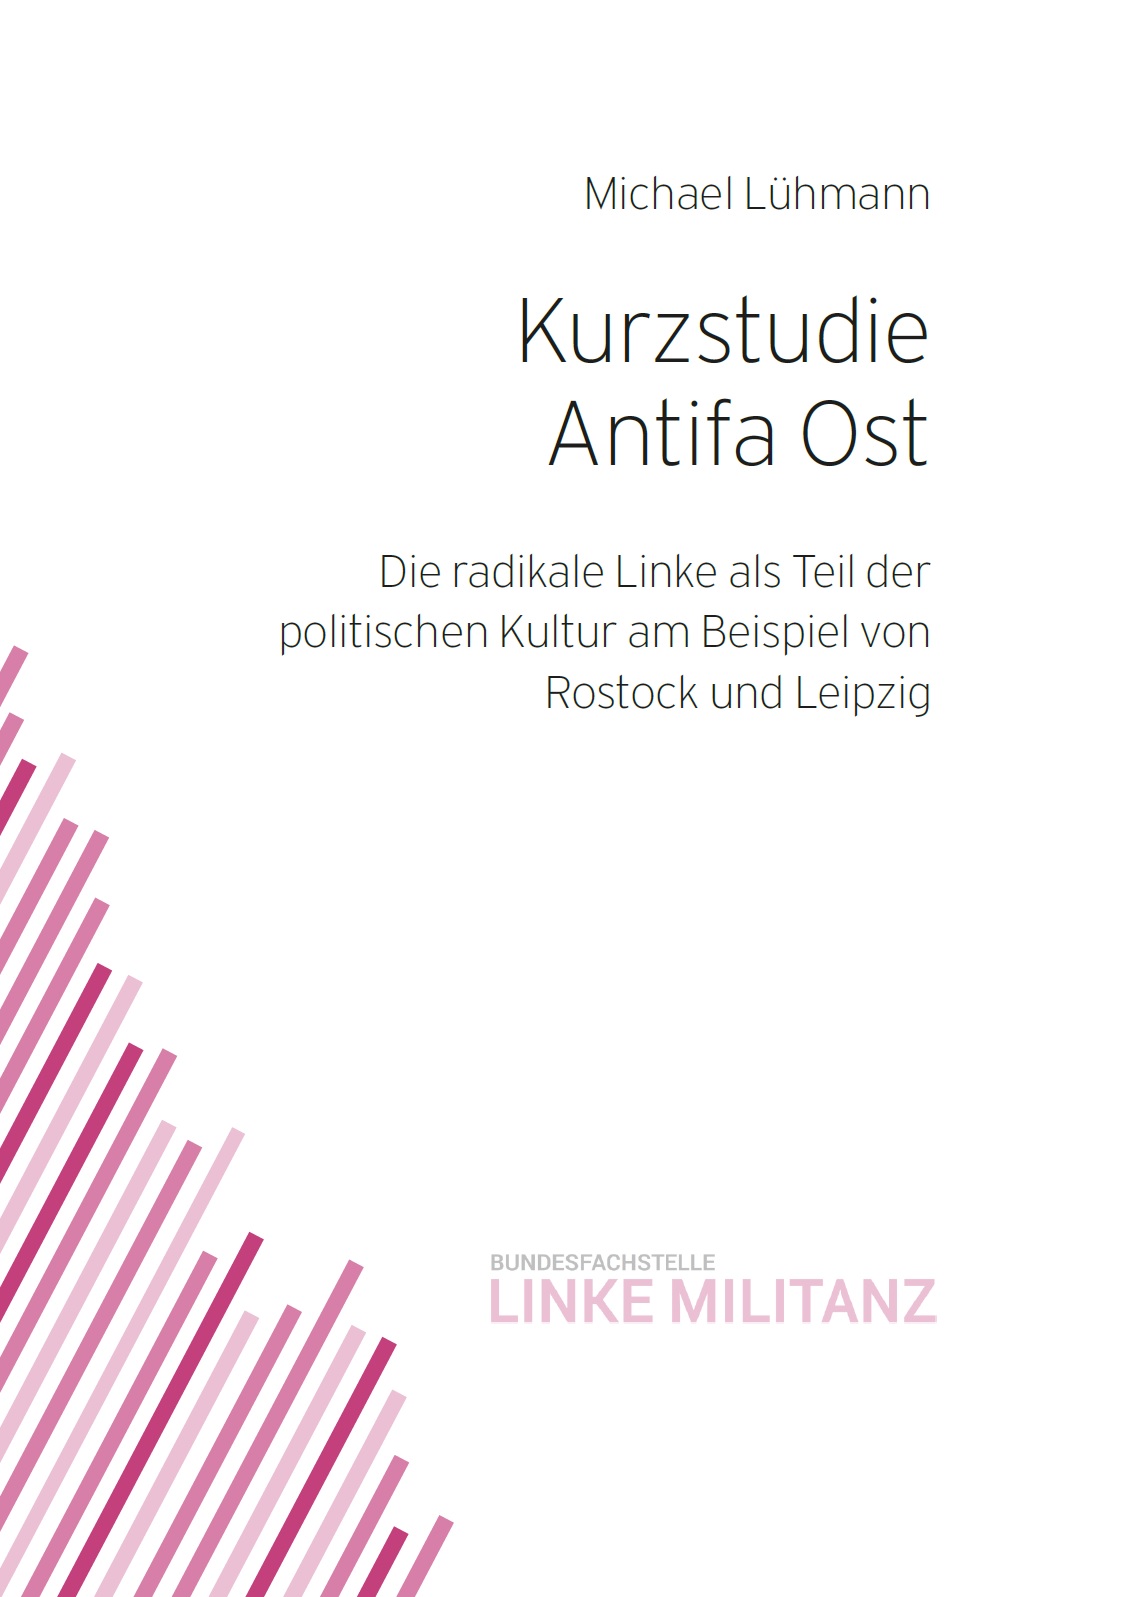 Auf dem Bild steht Kurzstudie Antifa Ost. Die radikale Linke als Teil der politischen Kultur am Beispiel von Rostock und Leipzig. Es ist auf weißen Grund geschrieben. Unten links ziehen sich rosa Streifen in unterschiedlicher Intensität durch das Bild.